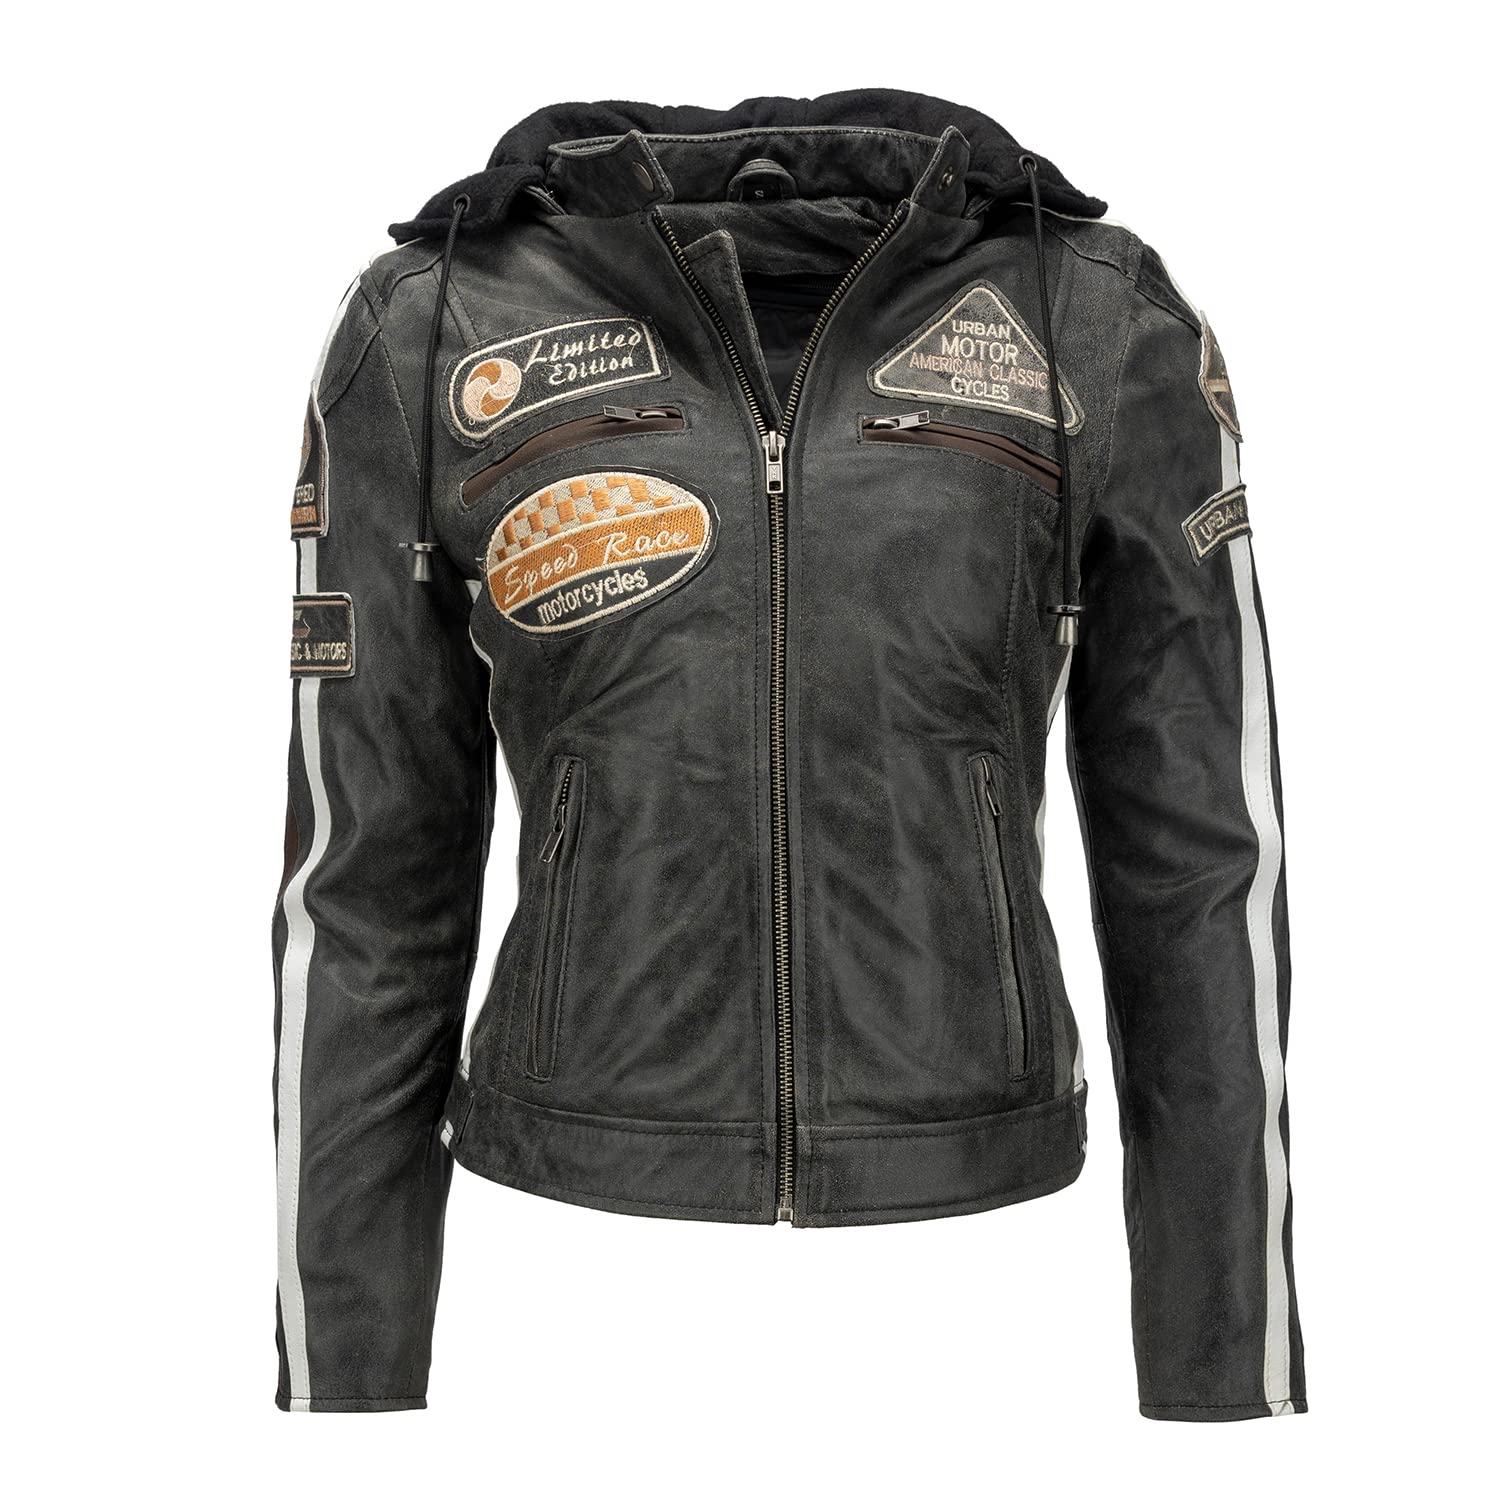 Urban Leather 58 LADIES Motorradjacke mit Schutzpolsterung, Breaker, XL, Dunkelgrau von URBAN 5884